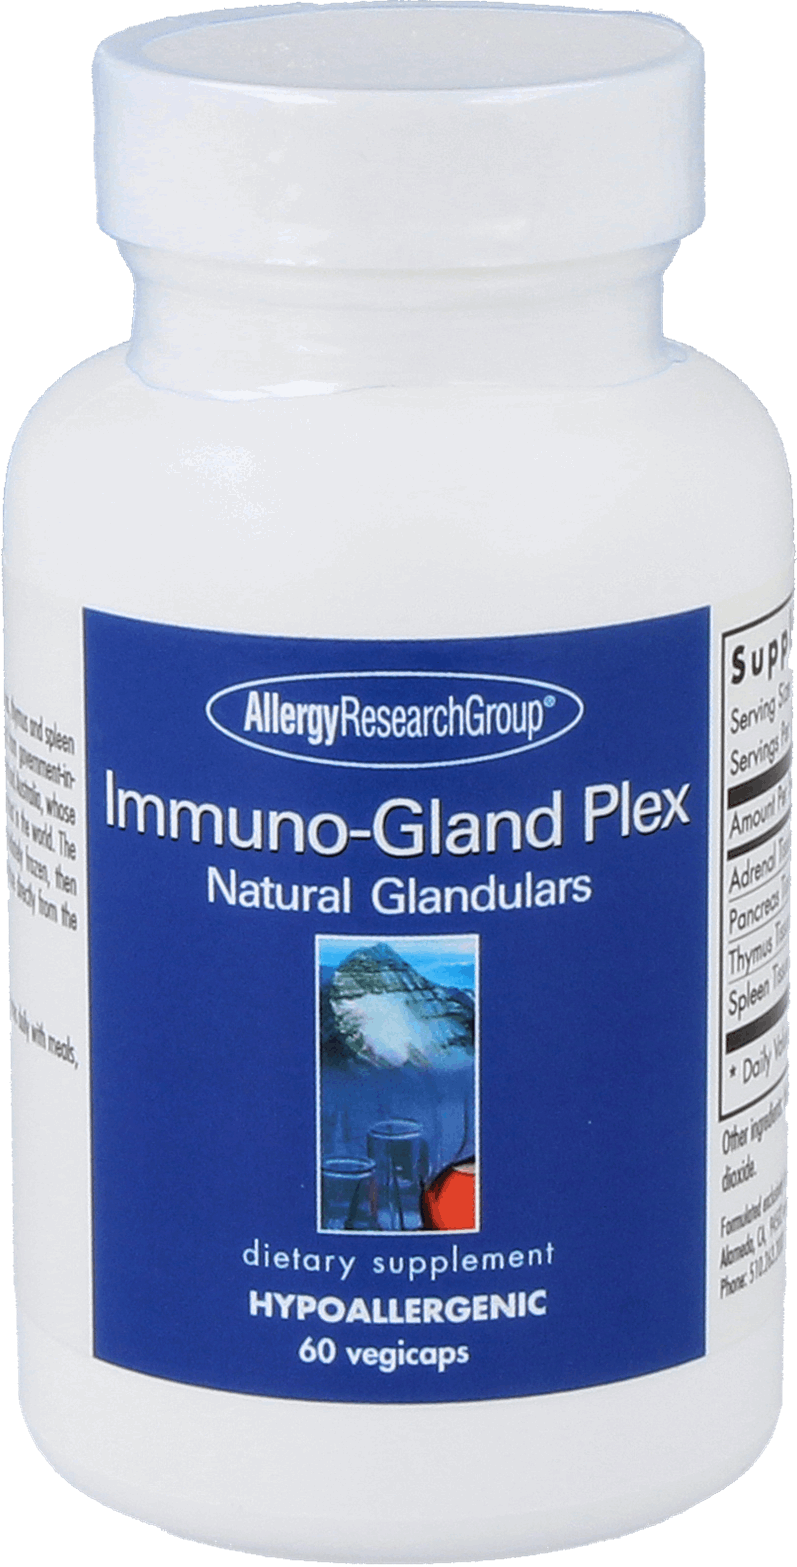 Immuno-Gland Plex 